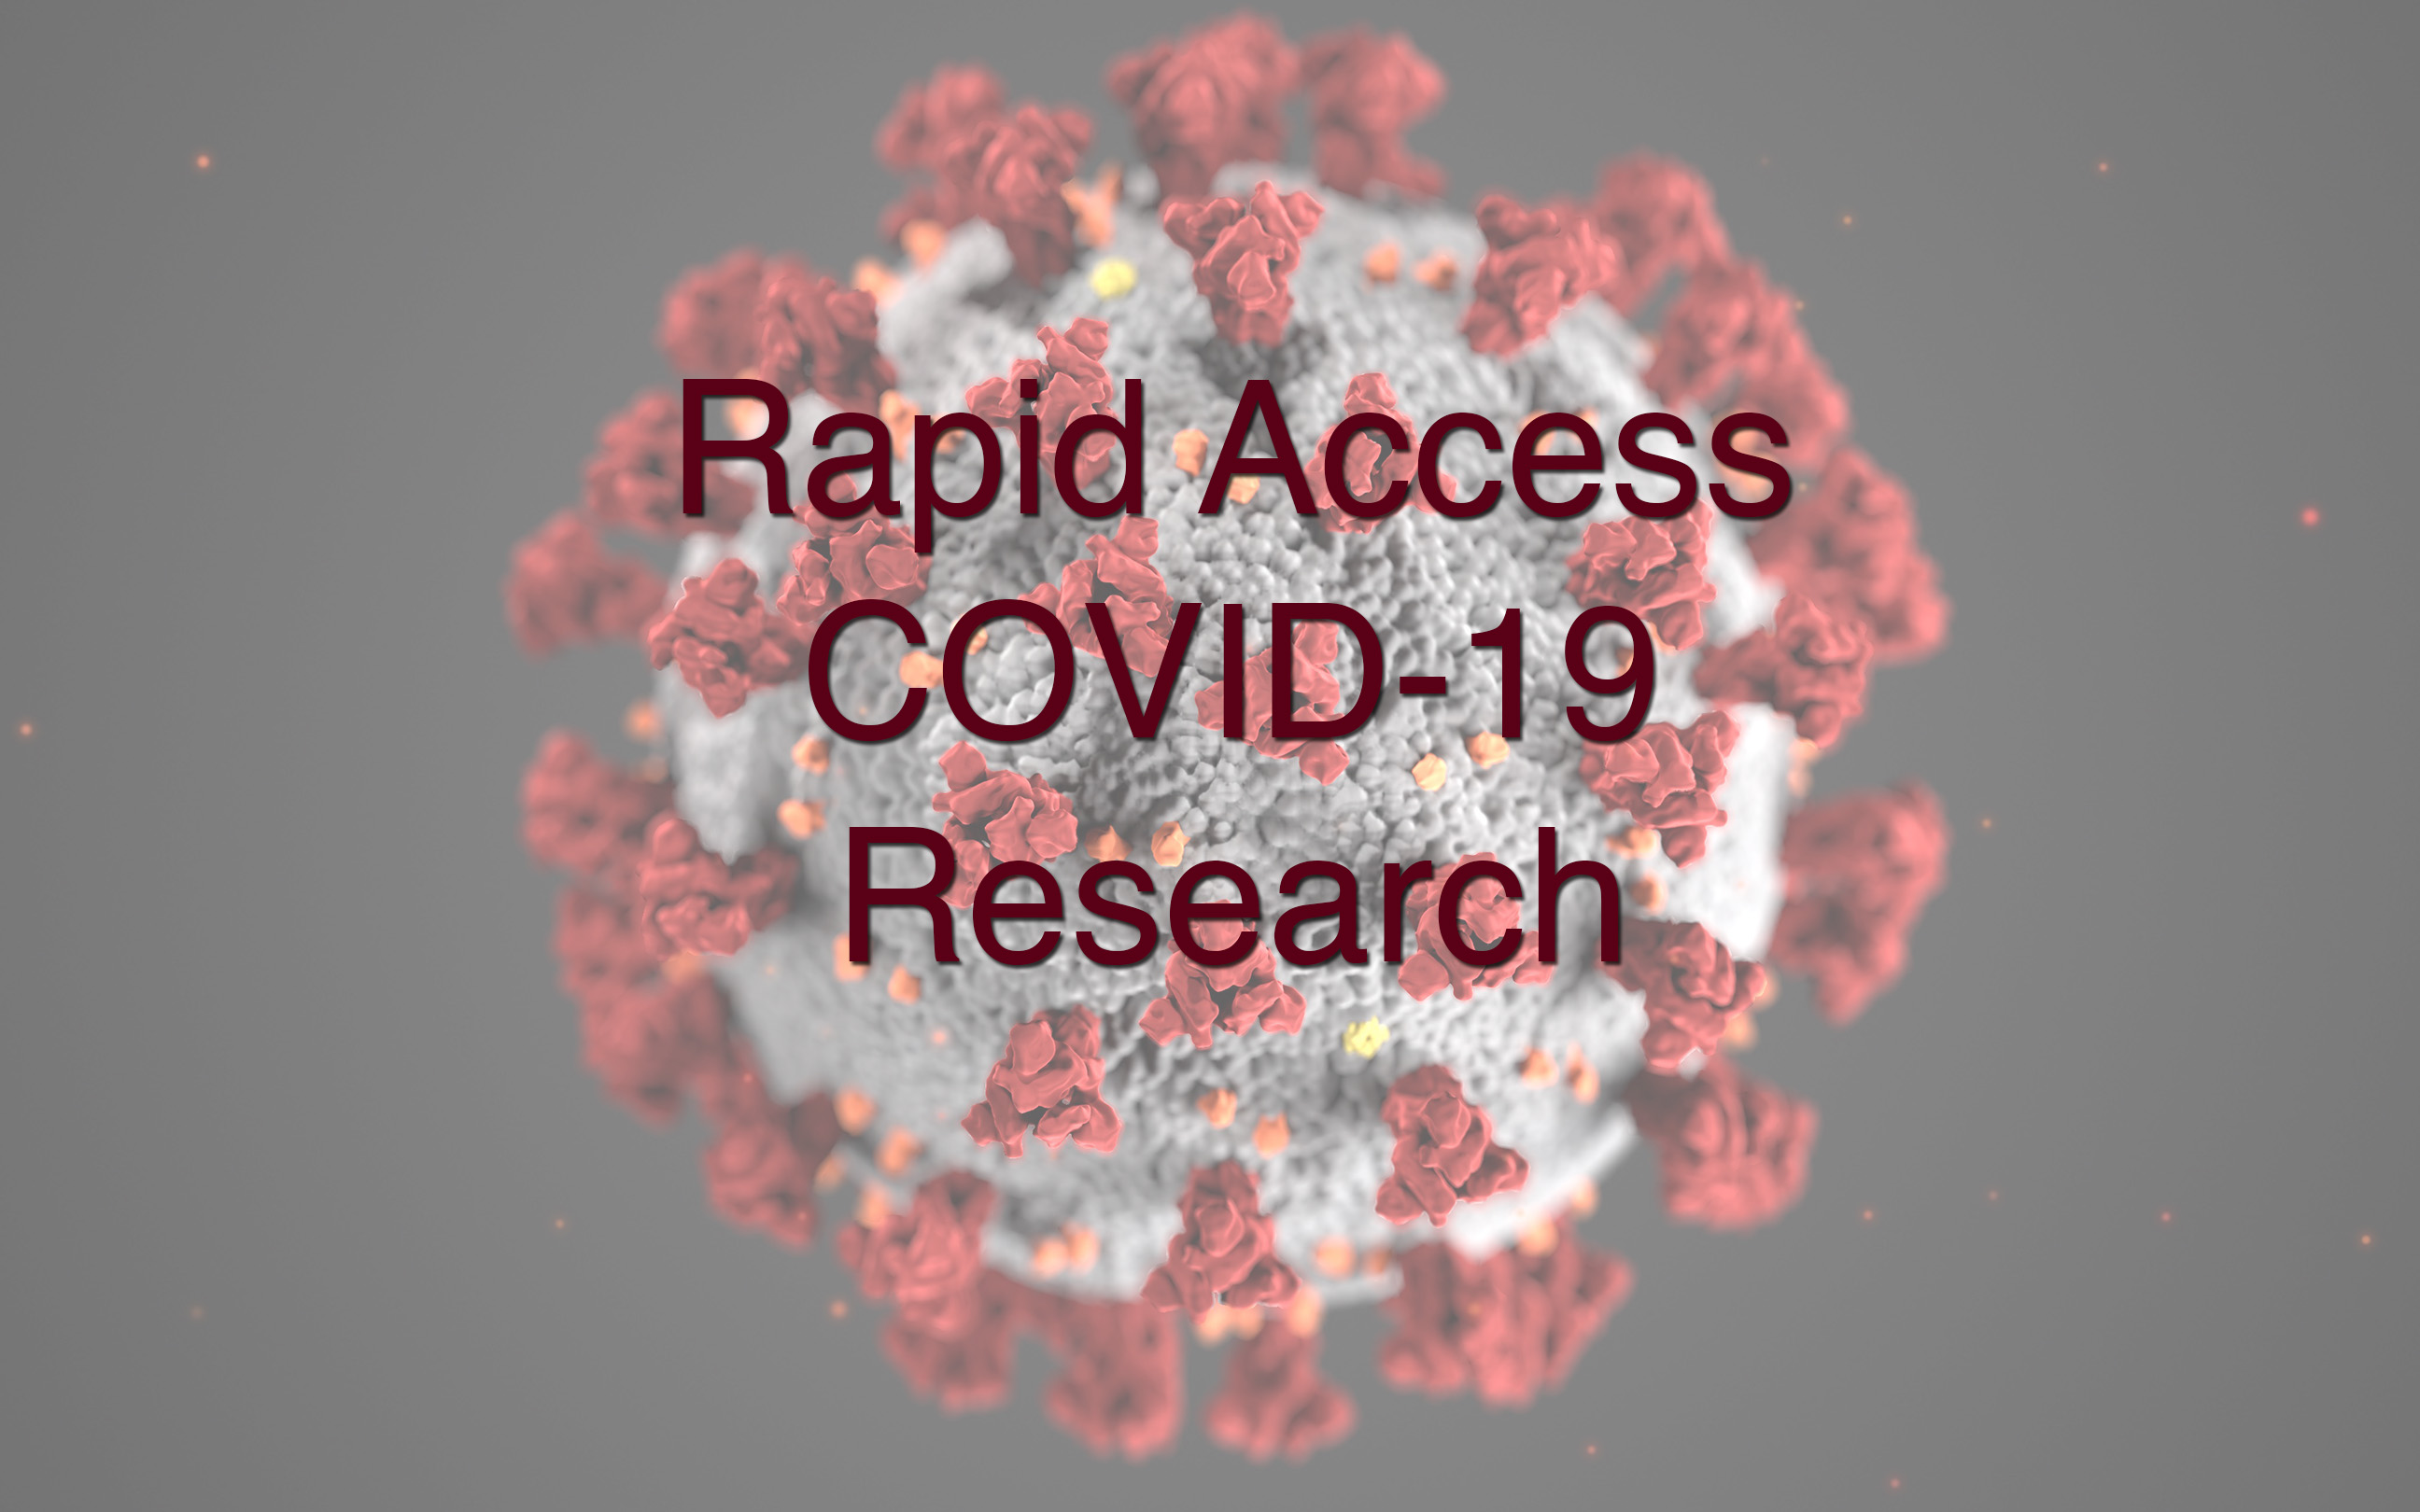 COVID-19 Research